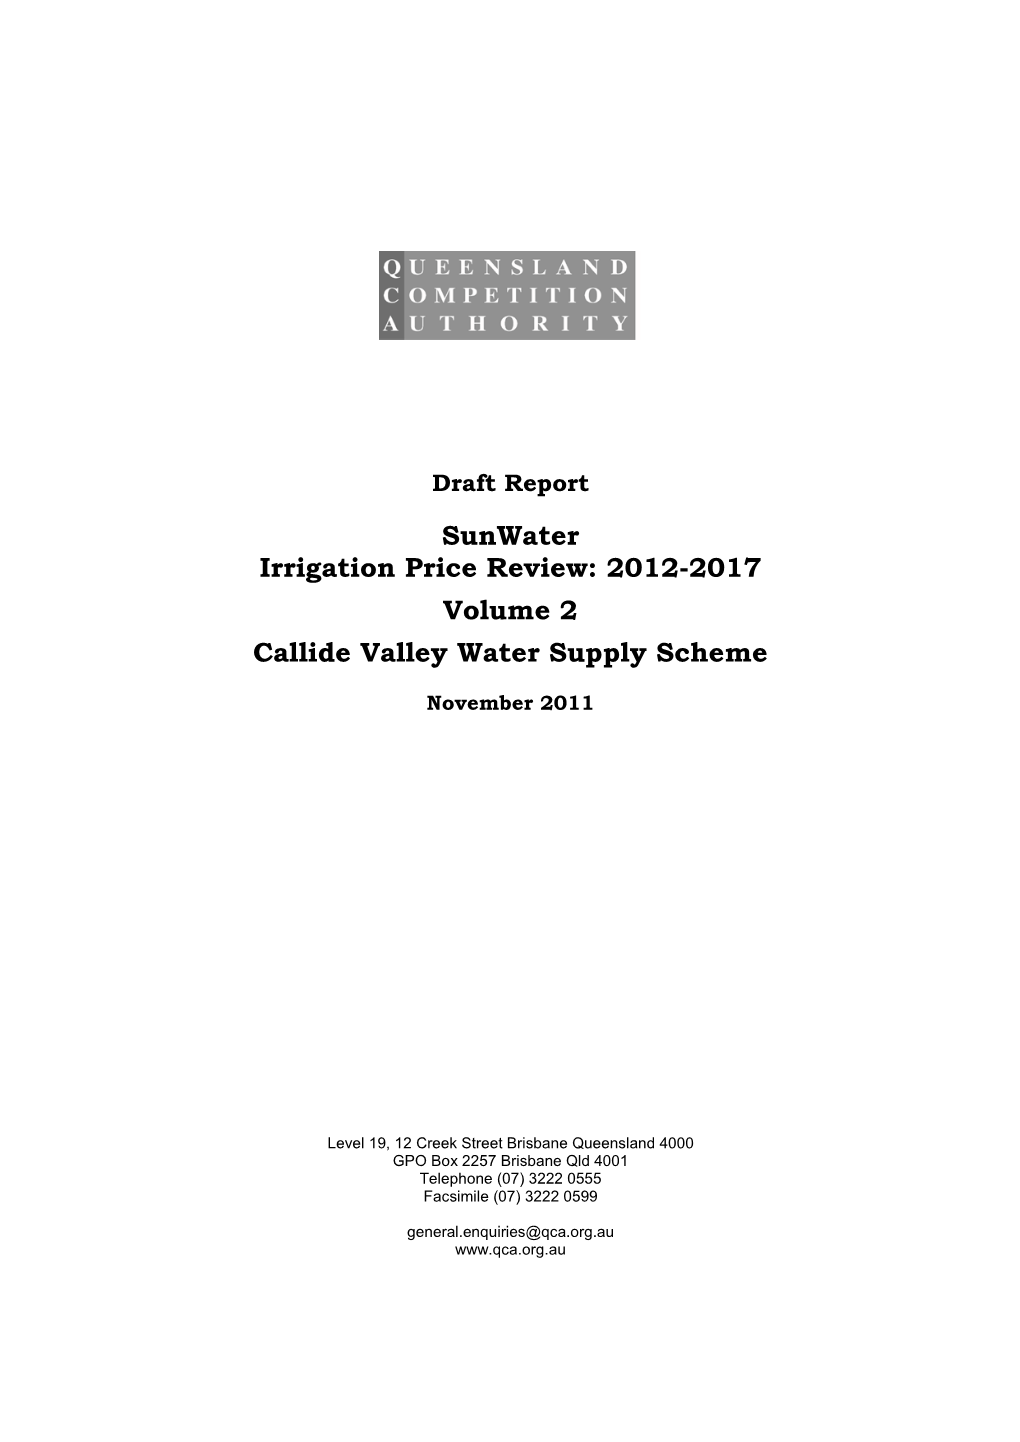 Sunwater Irrigation Price Review: 2012-2017 Volume 2 Callide Valley Water Supply Scheme